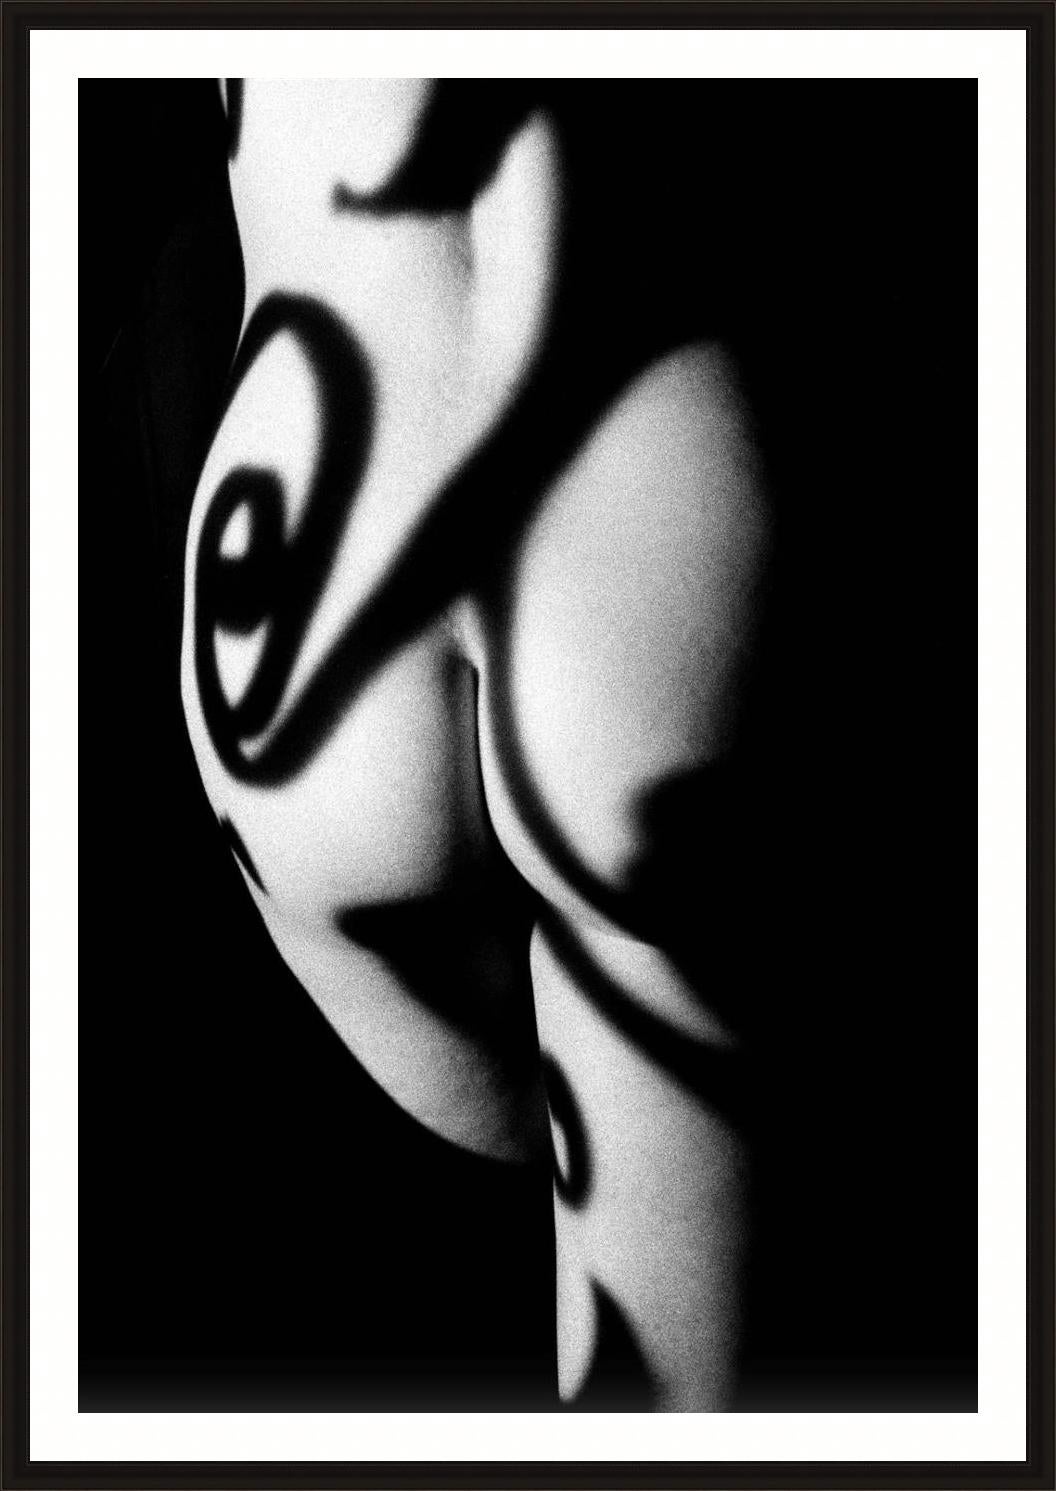 Butt Shadow - Photograph by Robert Farber